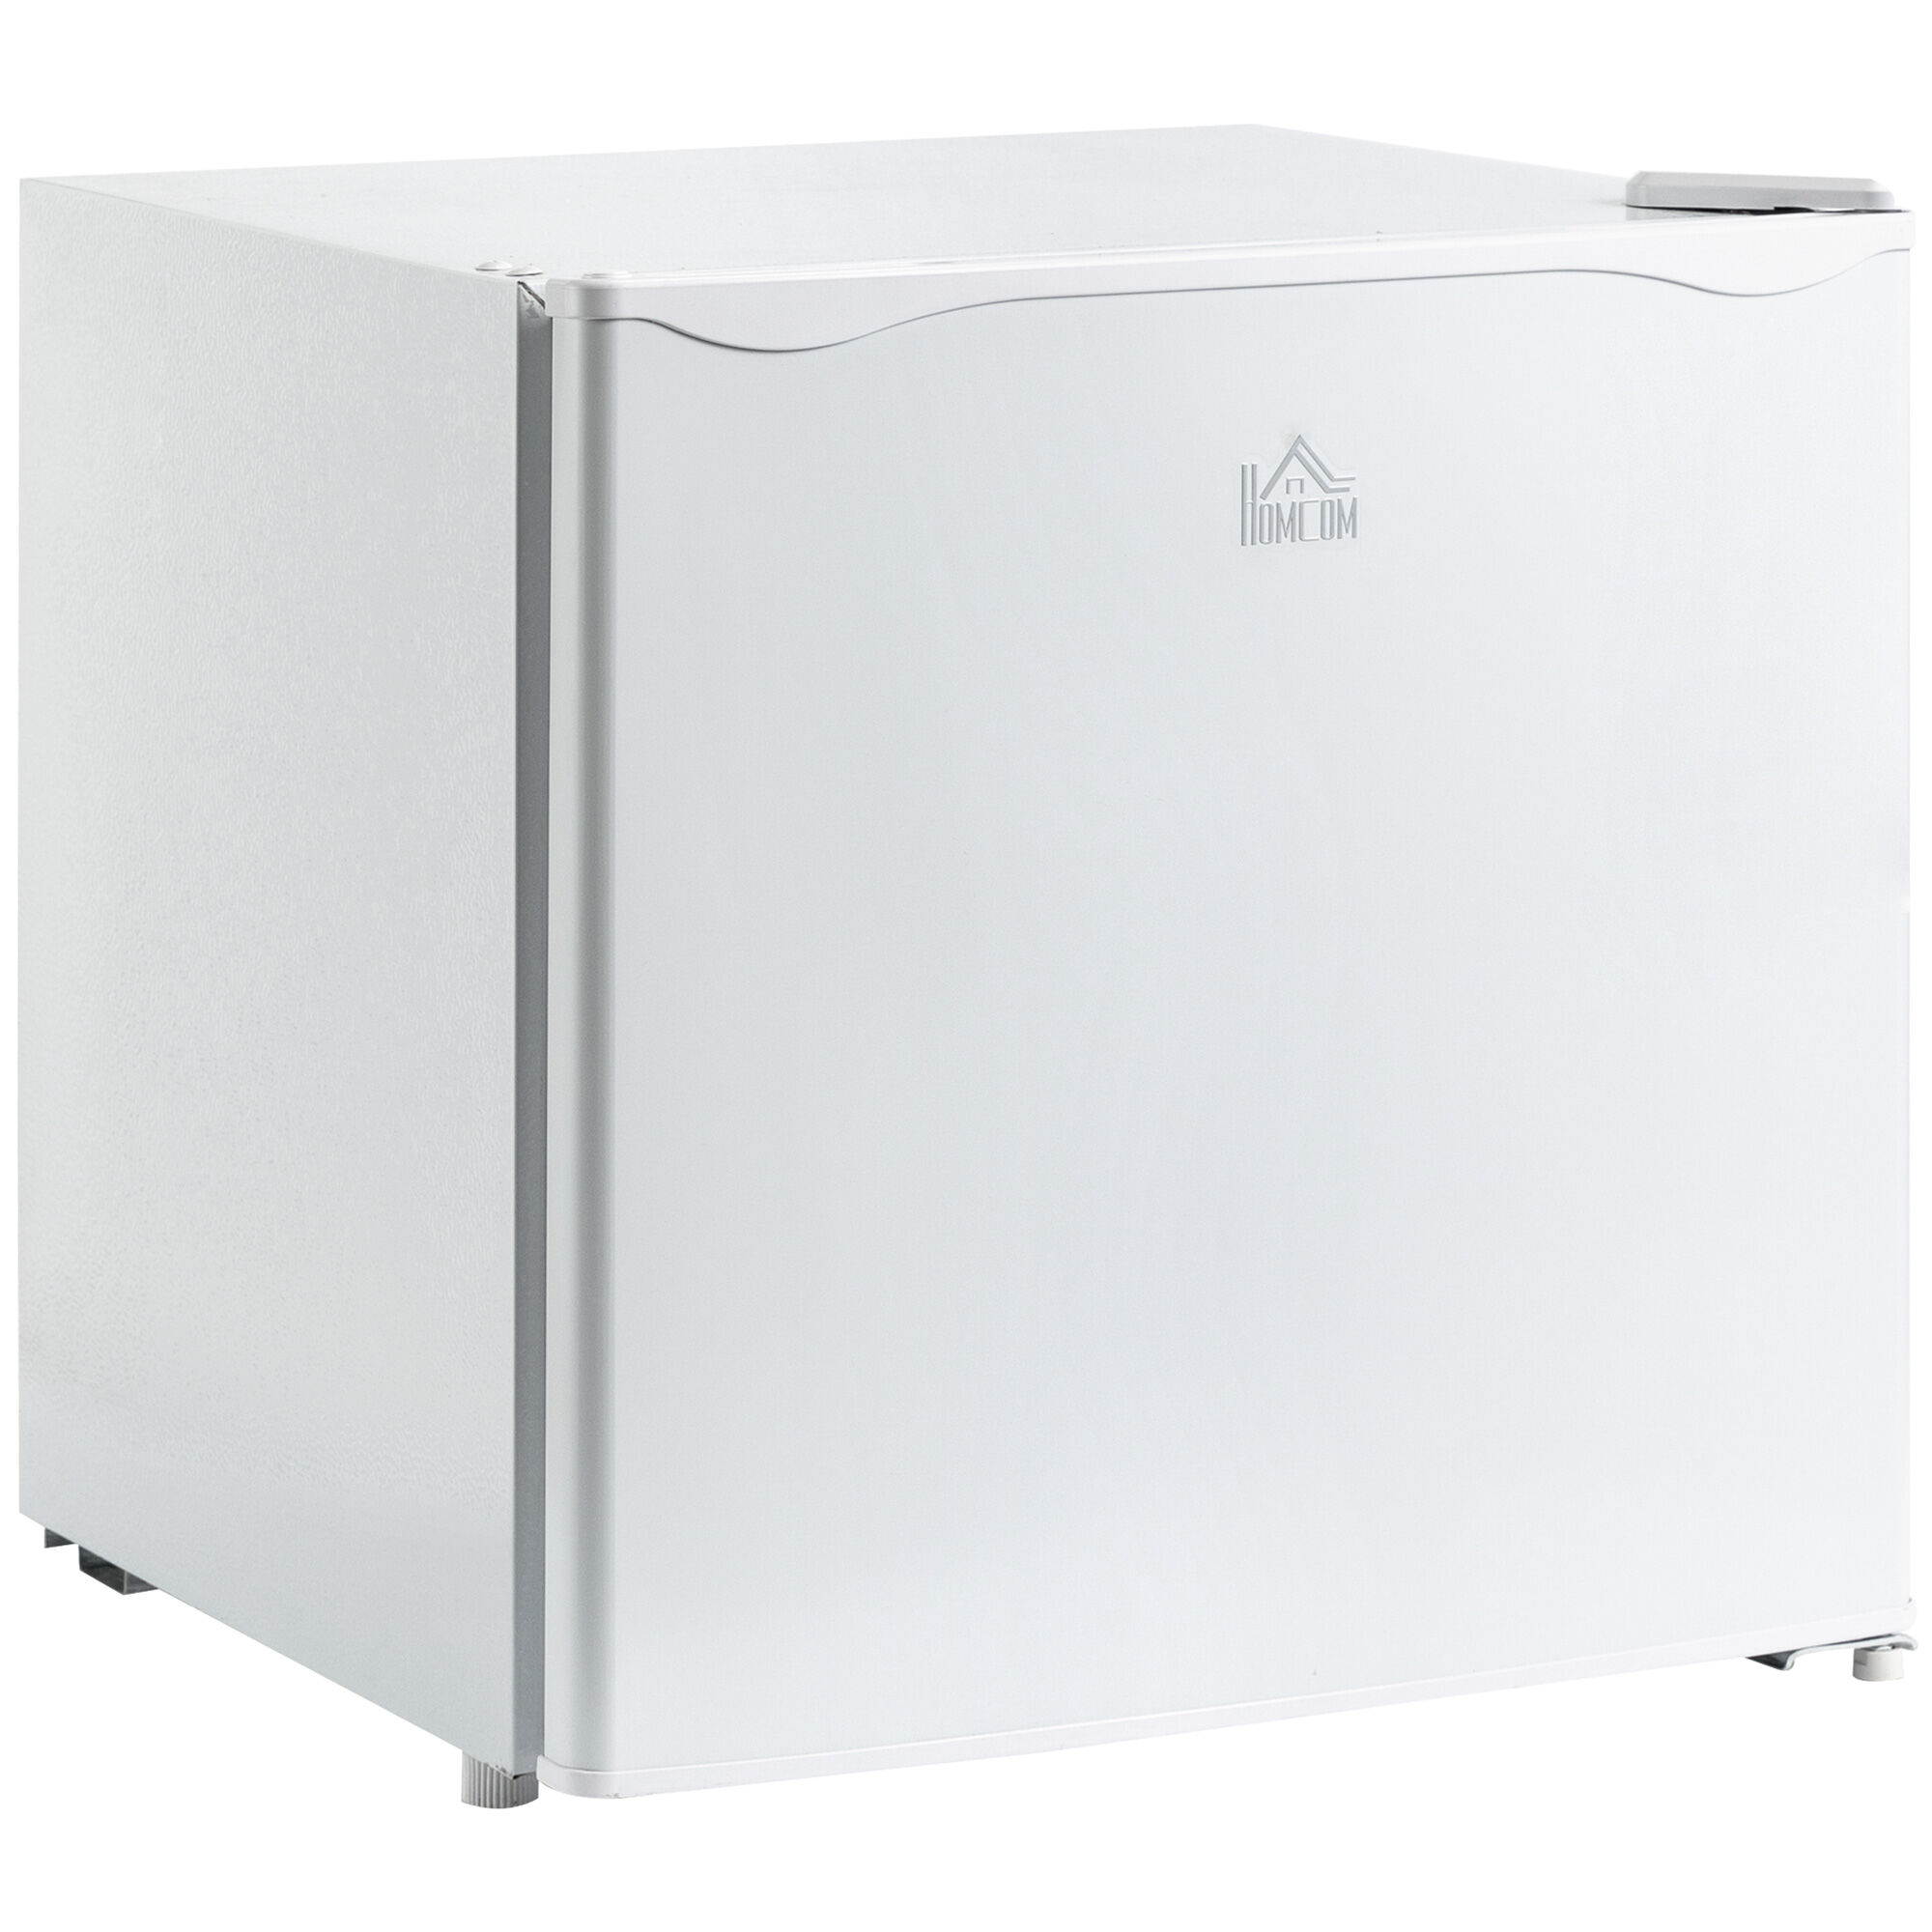 HOMCOM 1.1 Cu.Ft Mini Freezer, Compact Upright Design, Reversible Door, Removable Shelves, White, for Home, Dorm, Office   Aosom.com Appliances